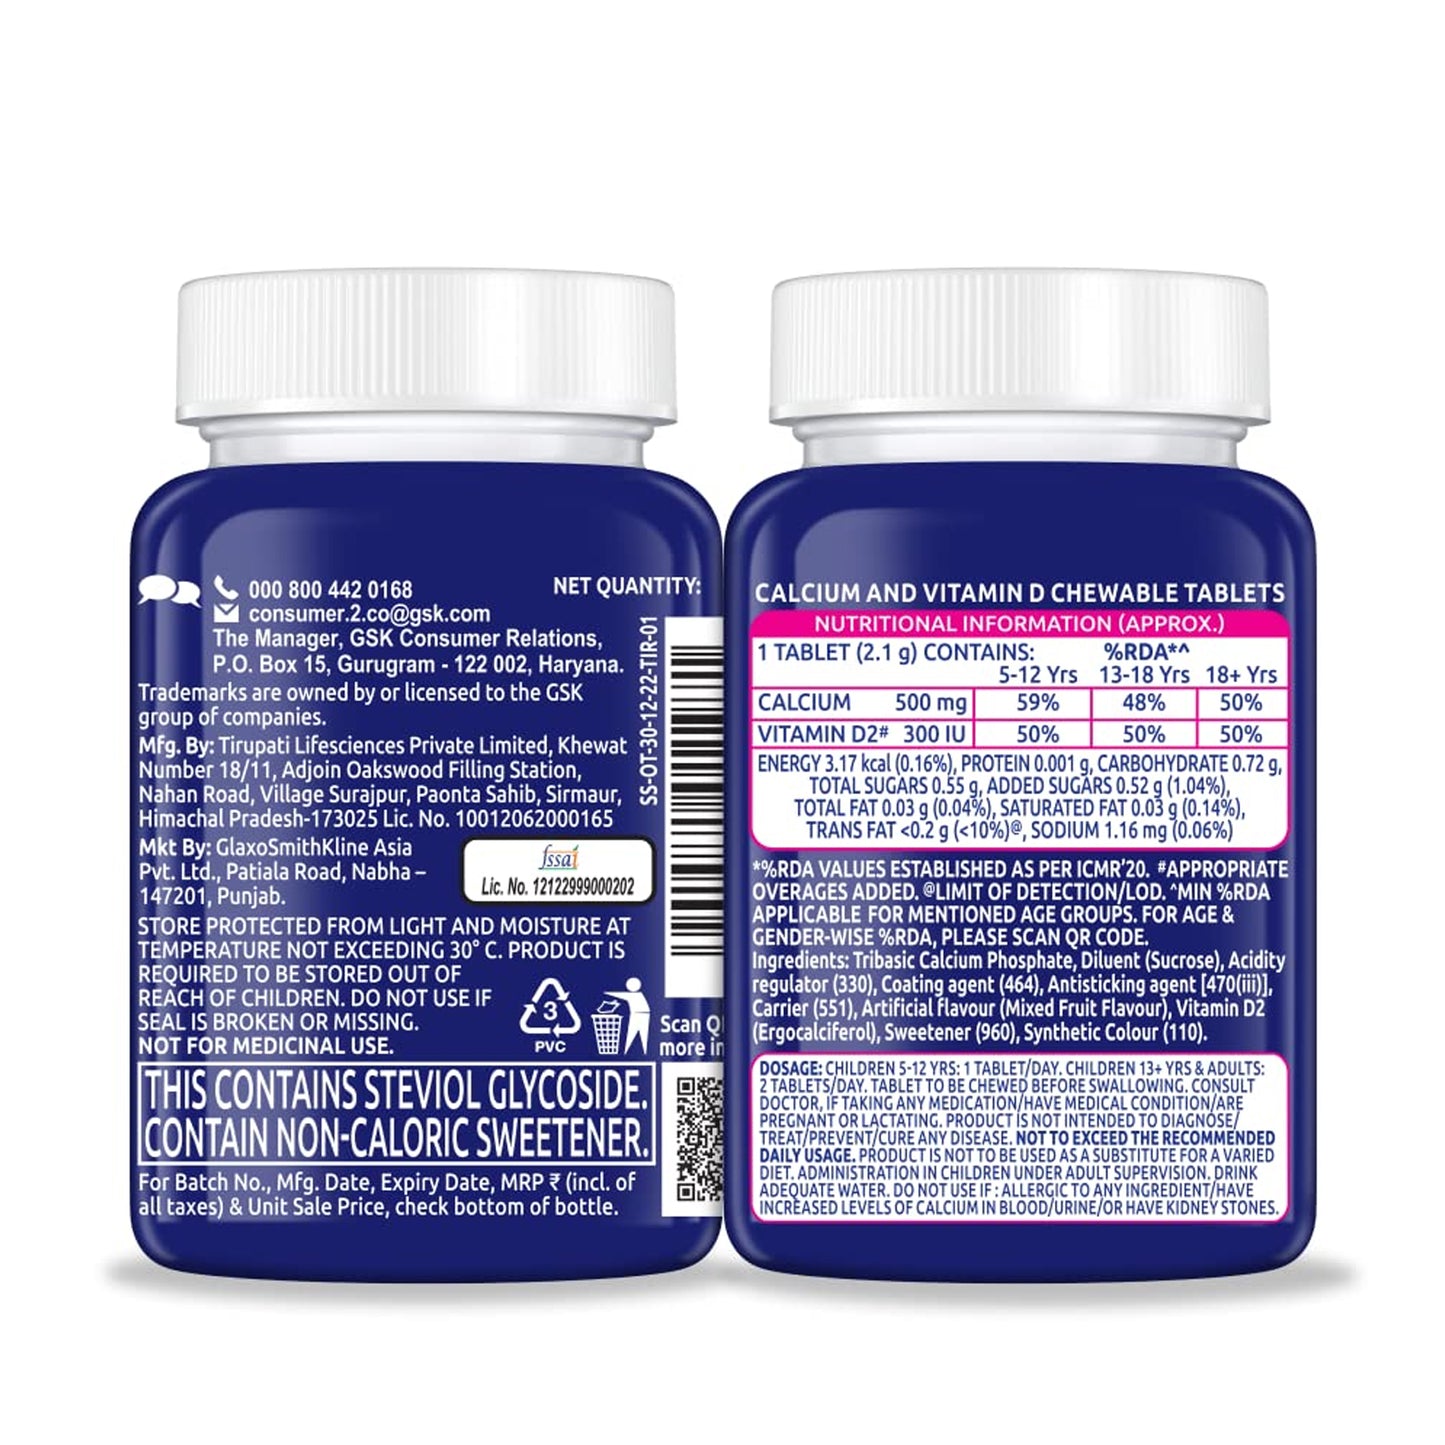 Centrum Ostocalcium Total With Vitamin D & Calcium, 30 Tablet